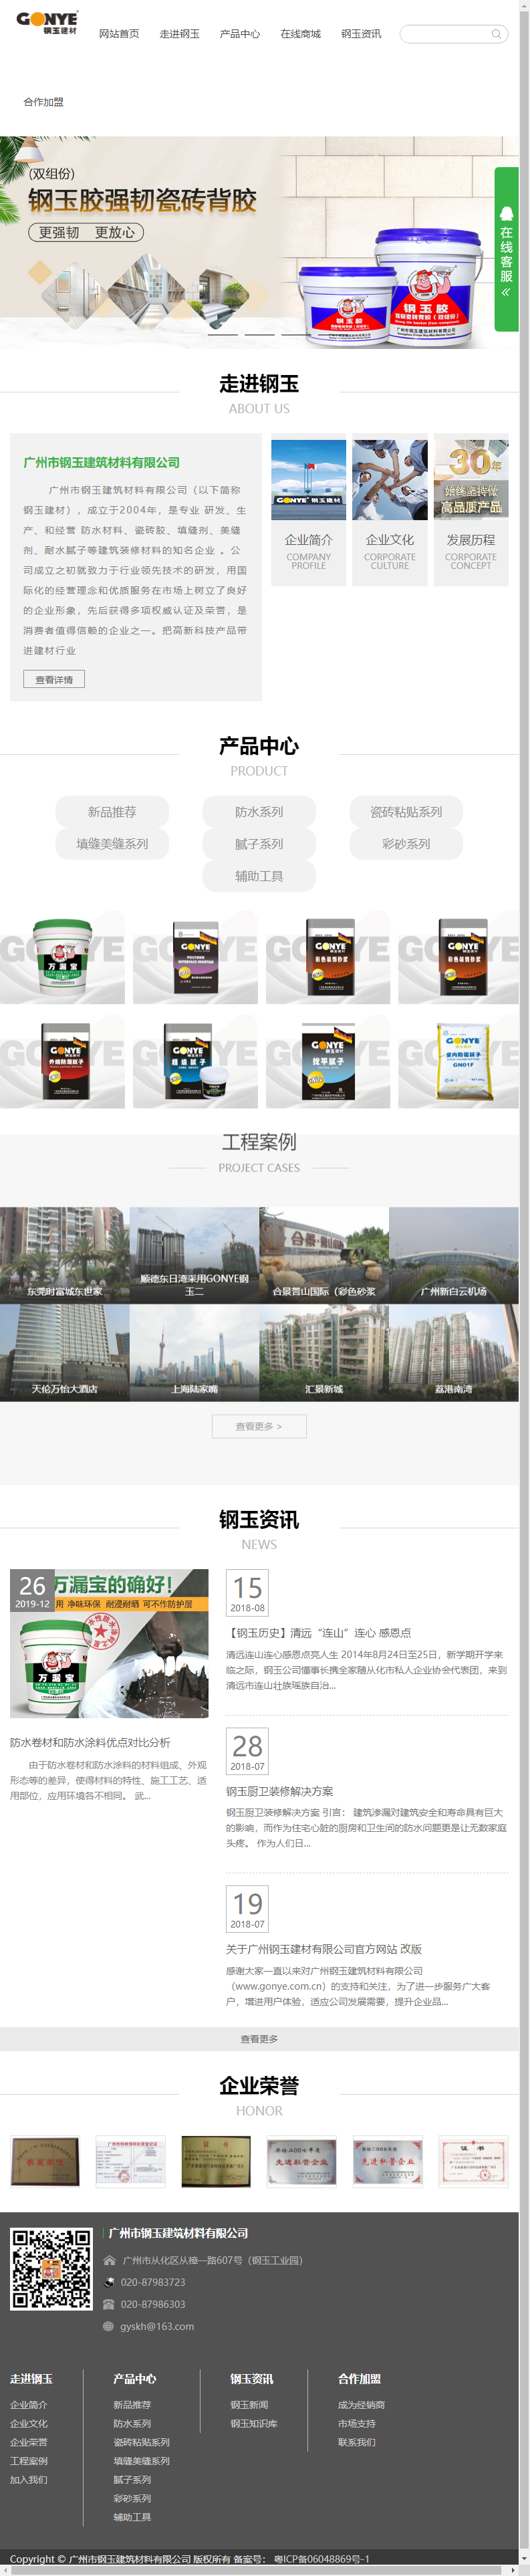 广州市钢玉建筑材料有限公司网站案例